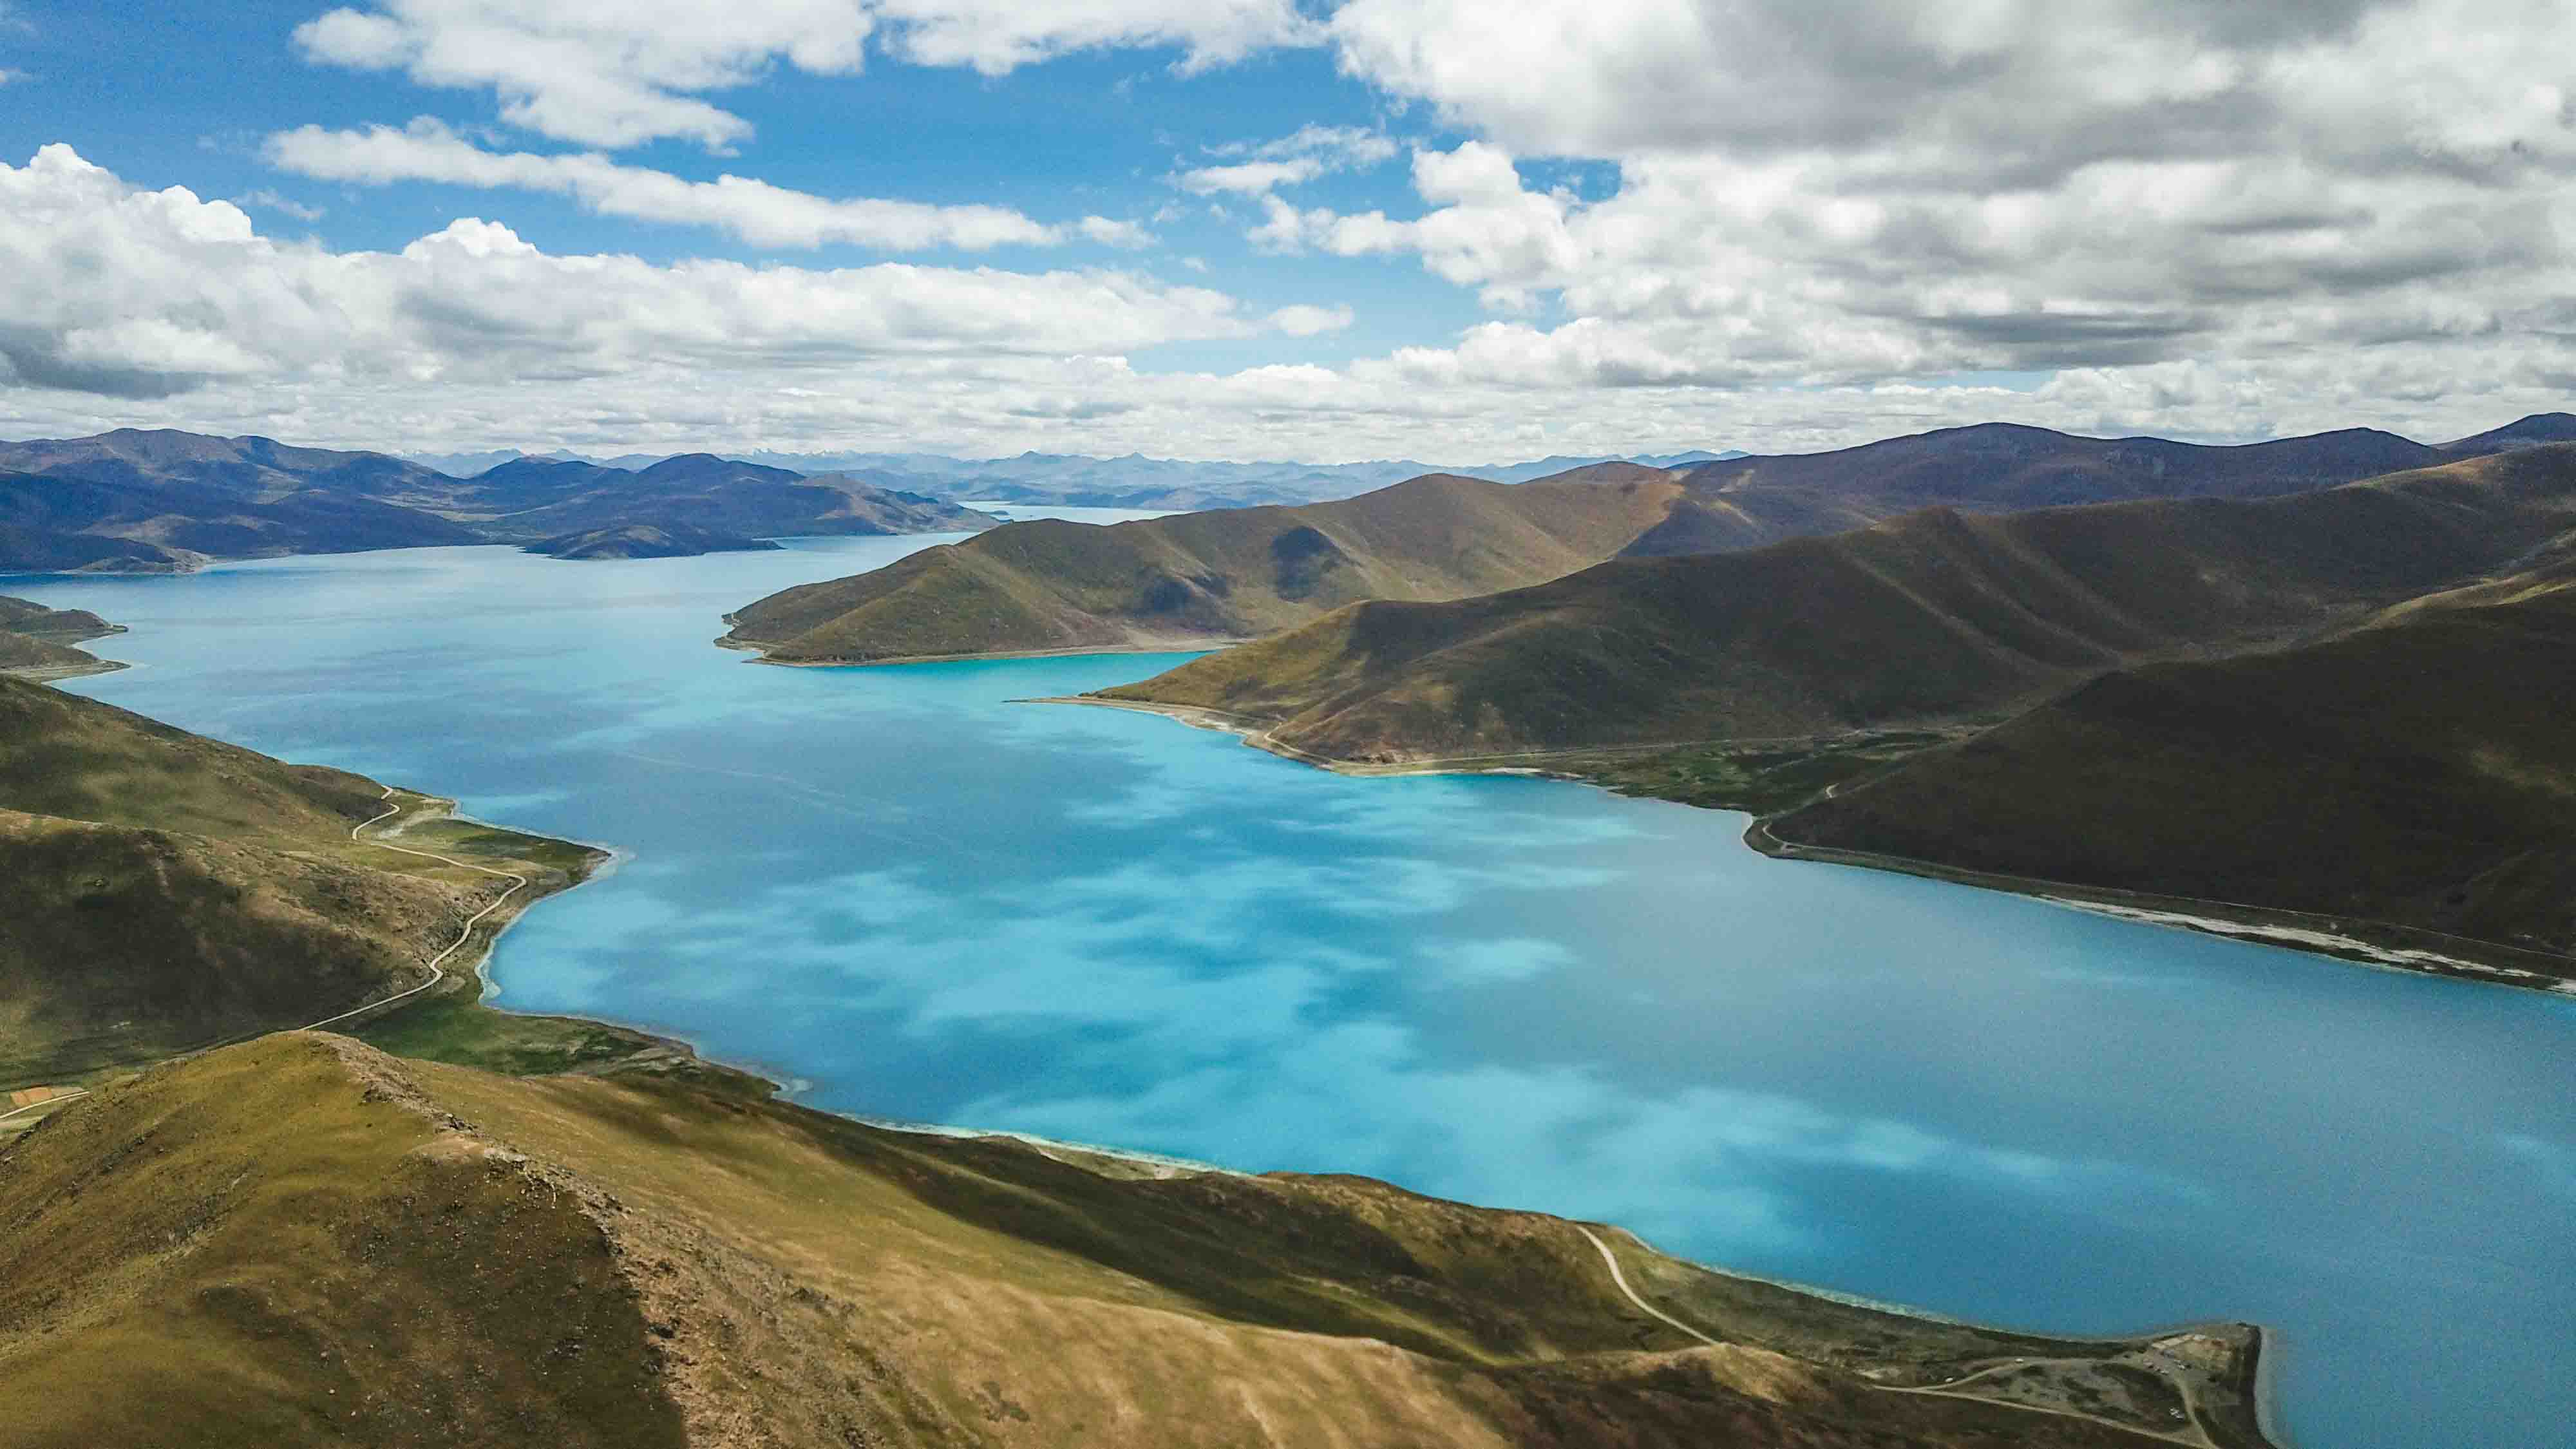 世界上最美丽的水之一:西藏羊卓雍措,来此邂逅净土,追逐灵魂吧